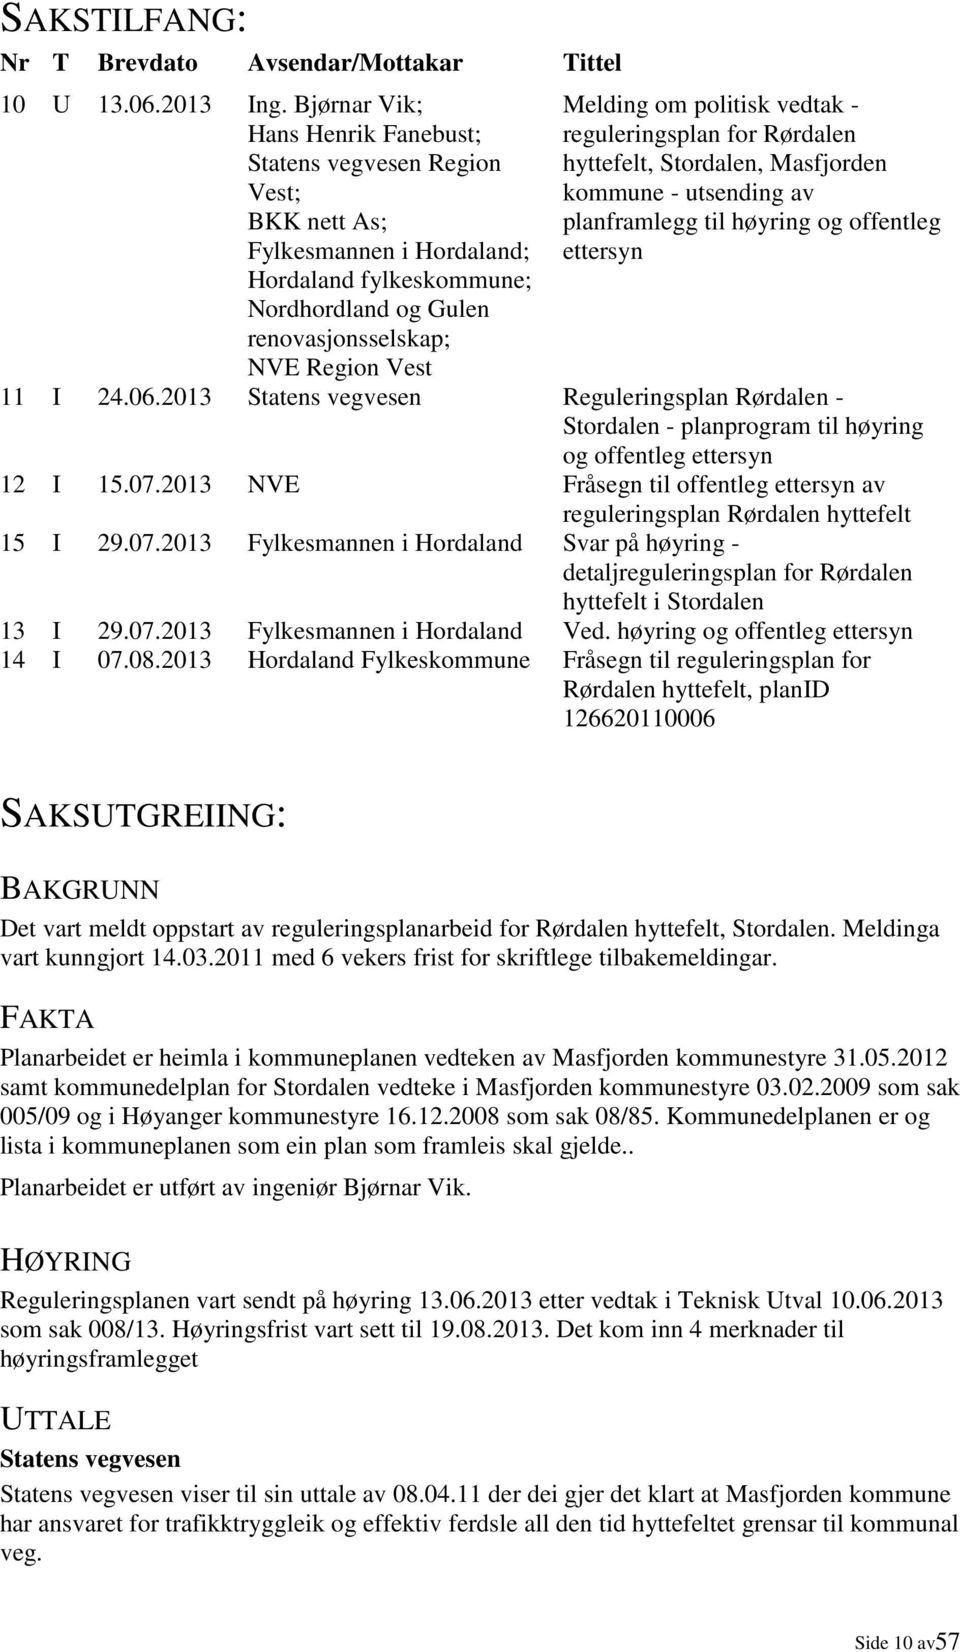 politisk vedtak - reguleringsplan for Rørdalen hyttefelt, Stordalen, Masfjorden kommune - utsending av planframlegg til høyring og offentleg ettersyn 11 I 24.06.